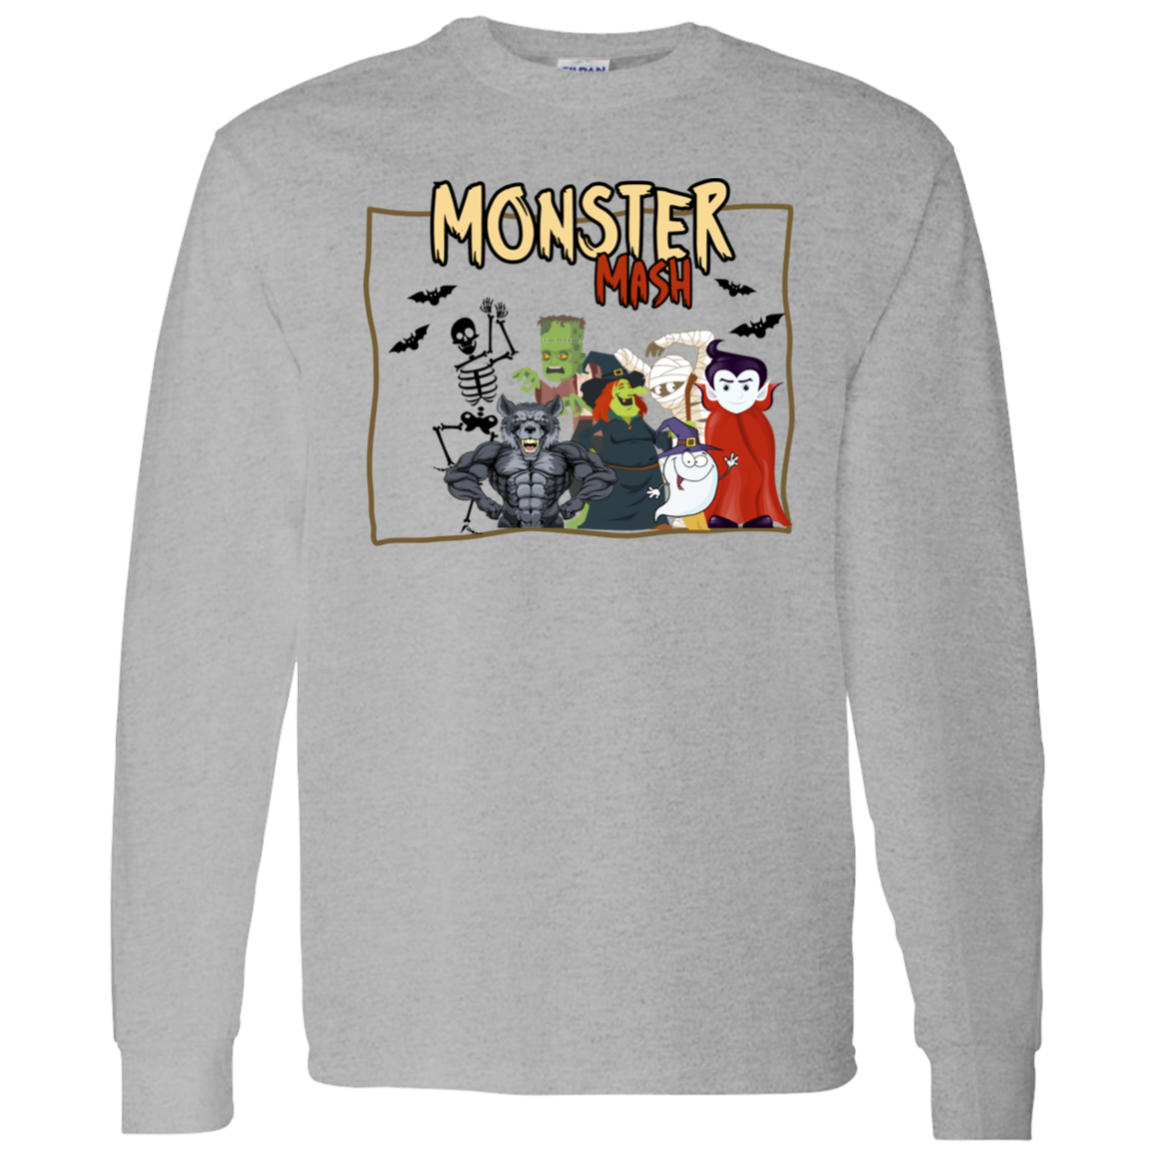 Monster Mash - Unisex Sweater